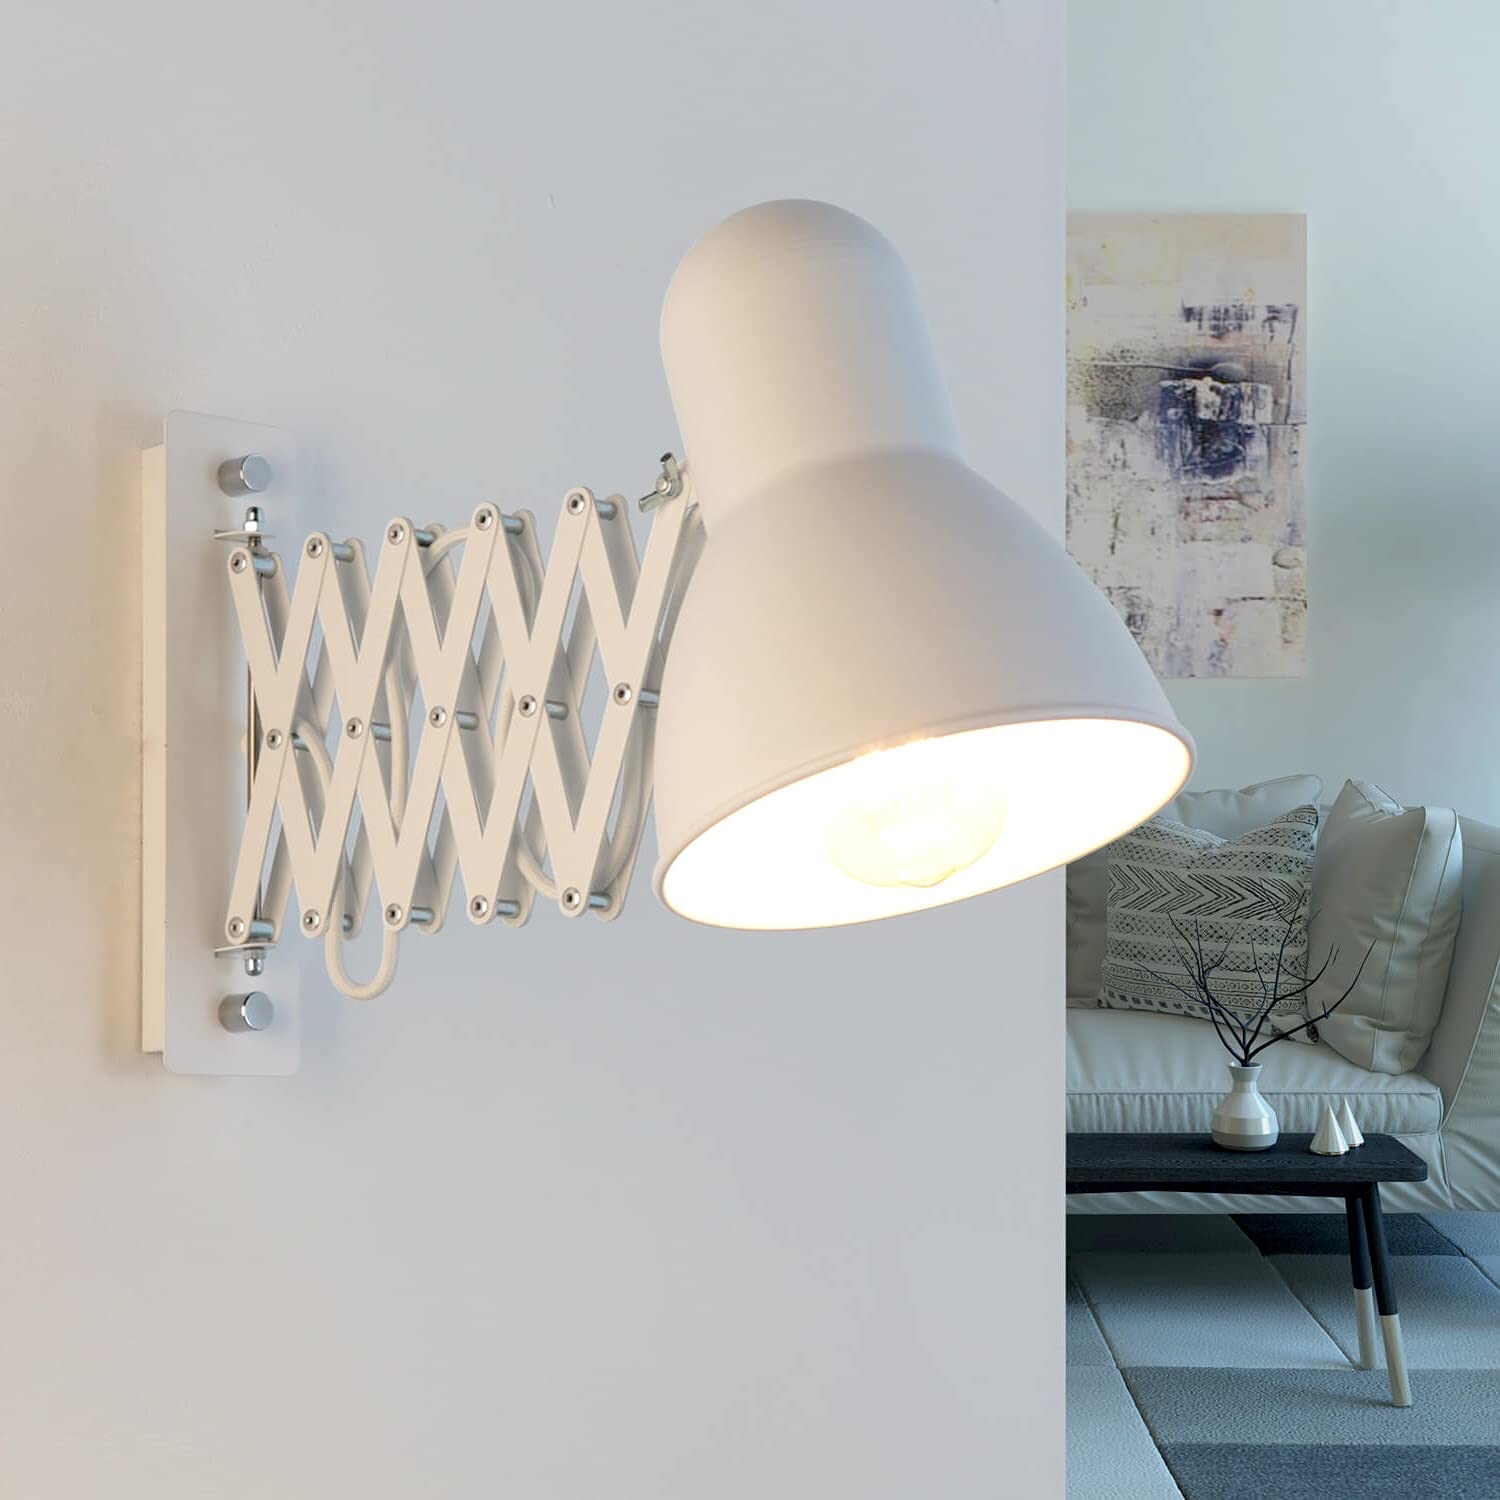 Ausziehbare Wandleuchte in weiß Vintage Stil inkl. 1x 10,5W E27 LED Wandlampe aus Metall für Wohnzimmer Schlafzimmer Lampe Leuchten Beleuchtung innen